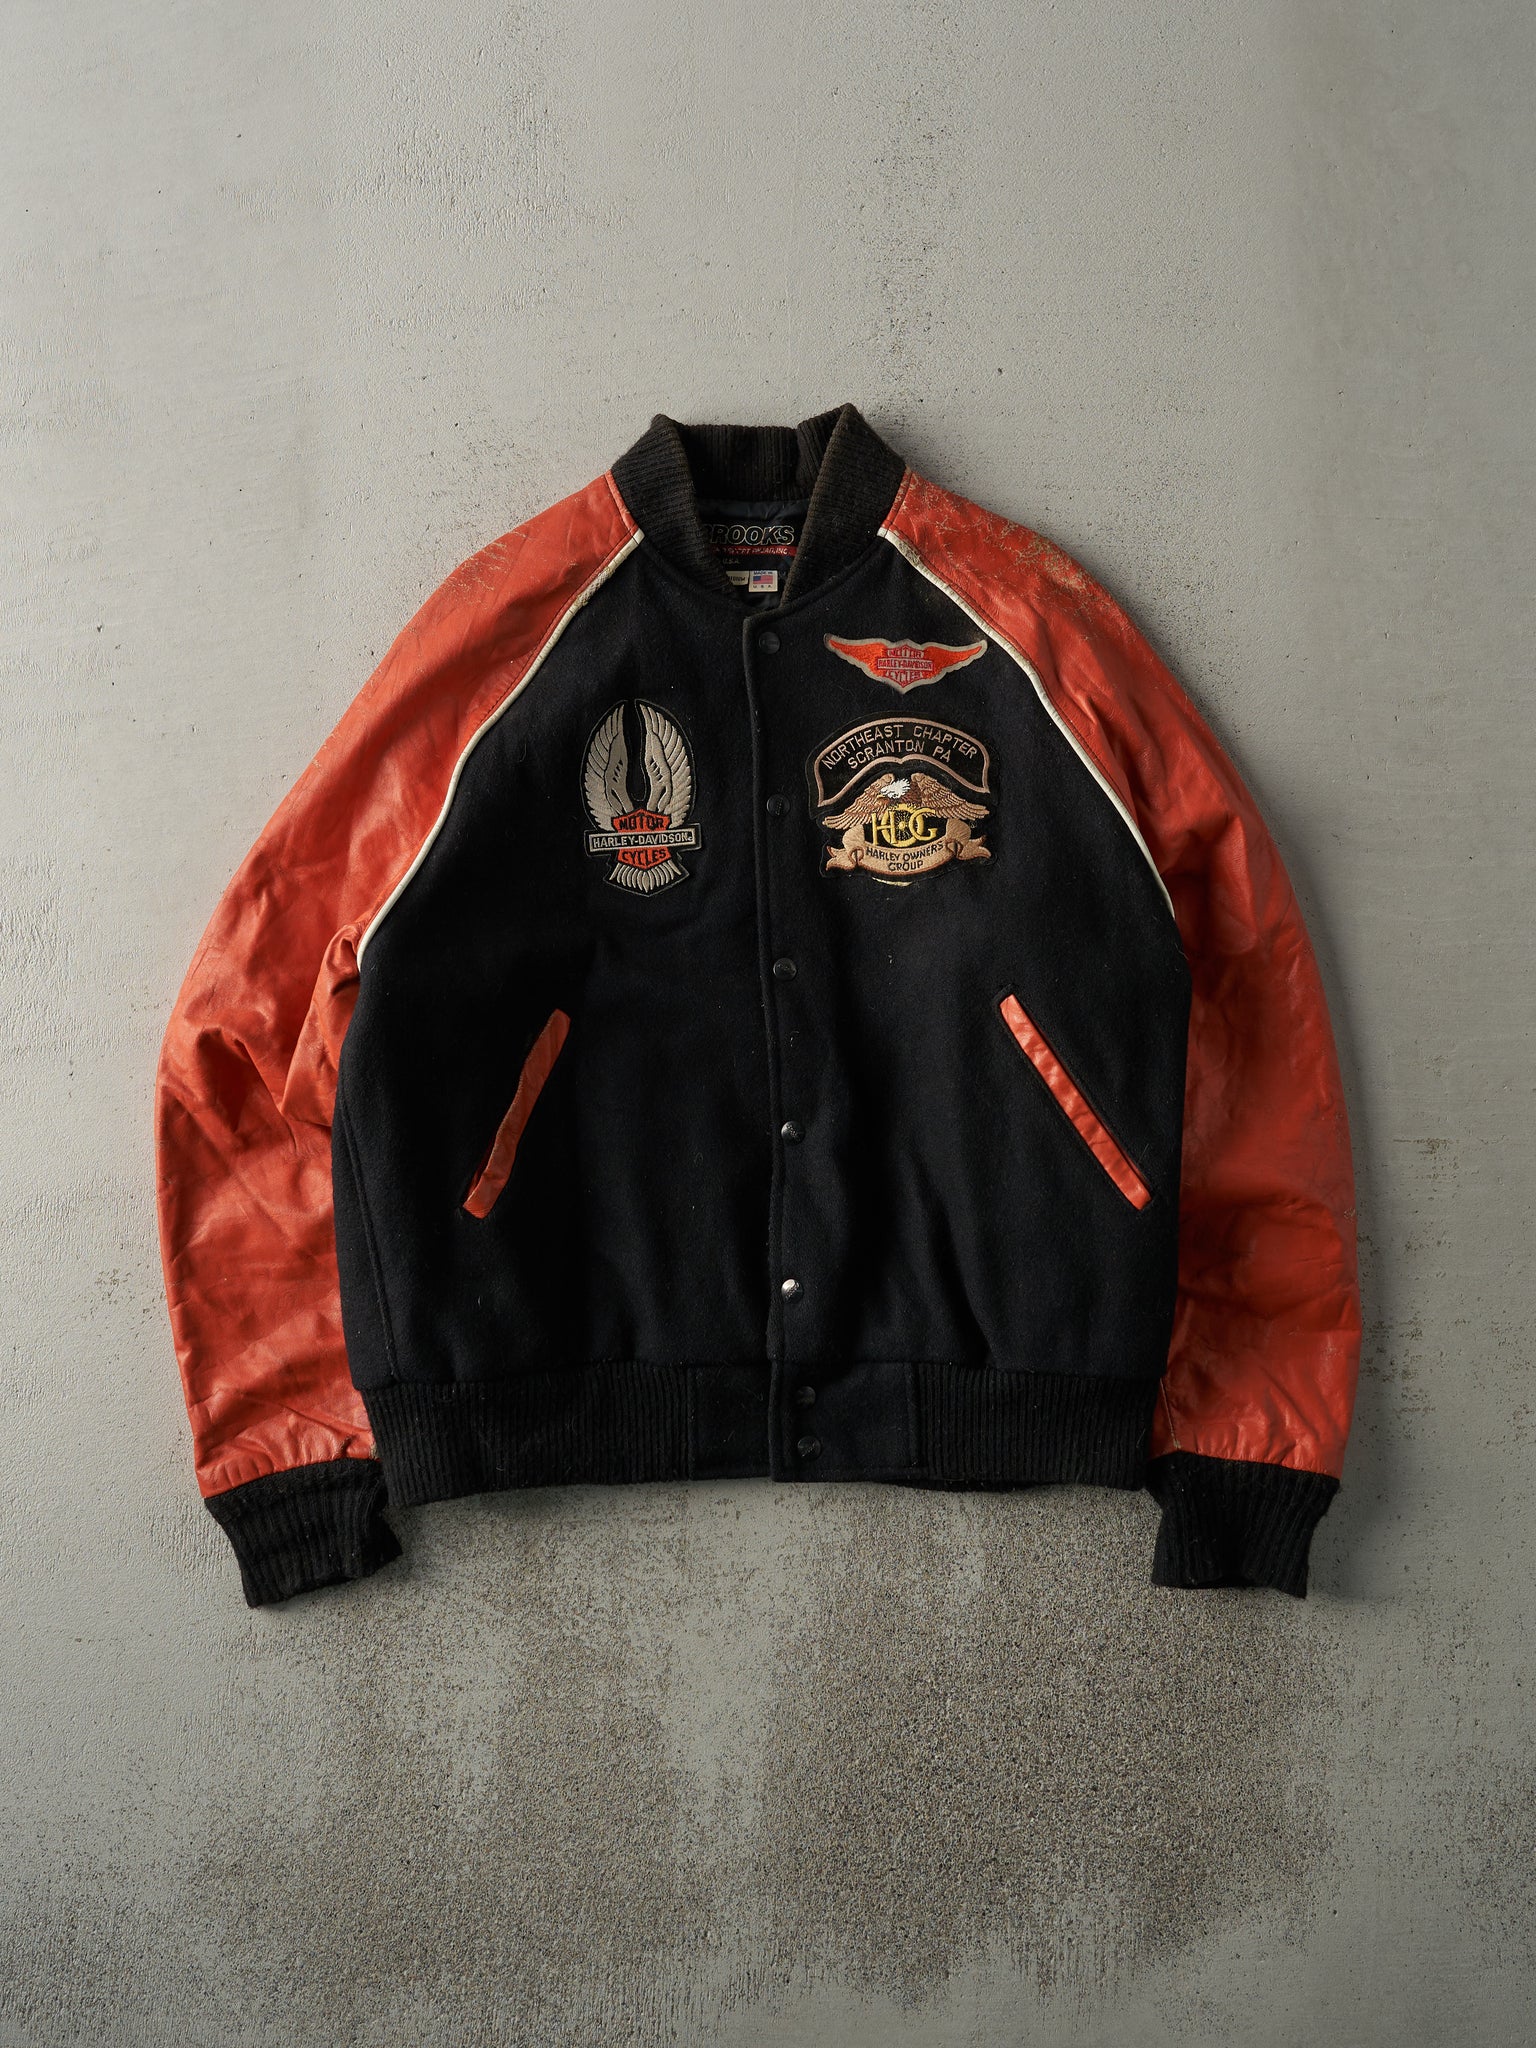 Vintage 90s Black and Orange Harley Davidson Varsity Biker Jacket (M/L)